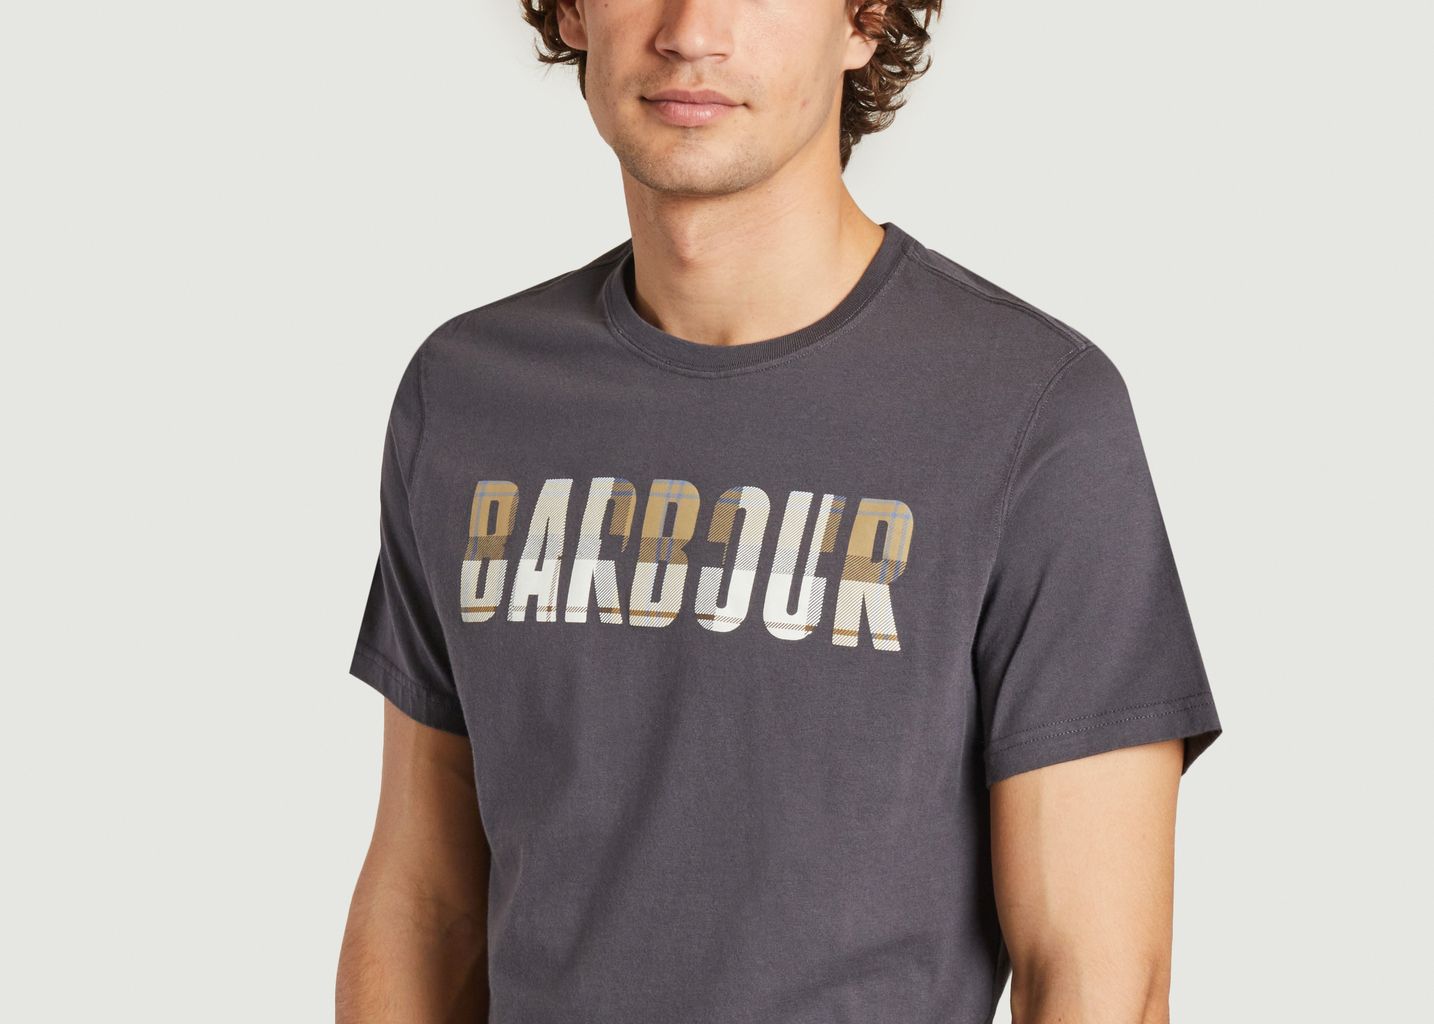 Thurso T-shirt - Barbour